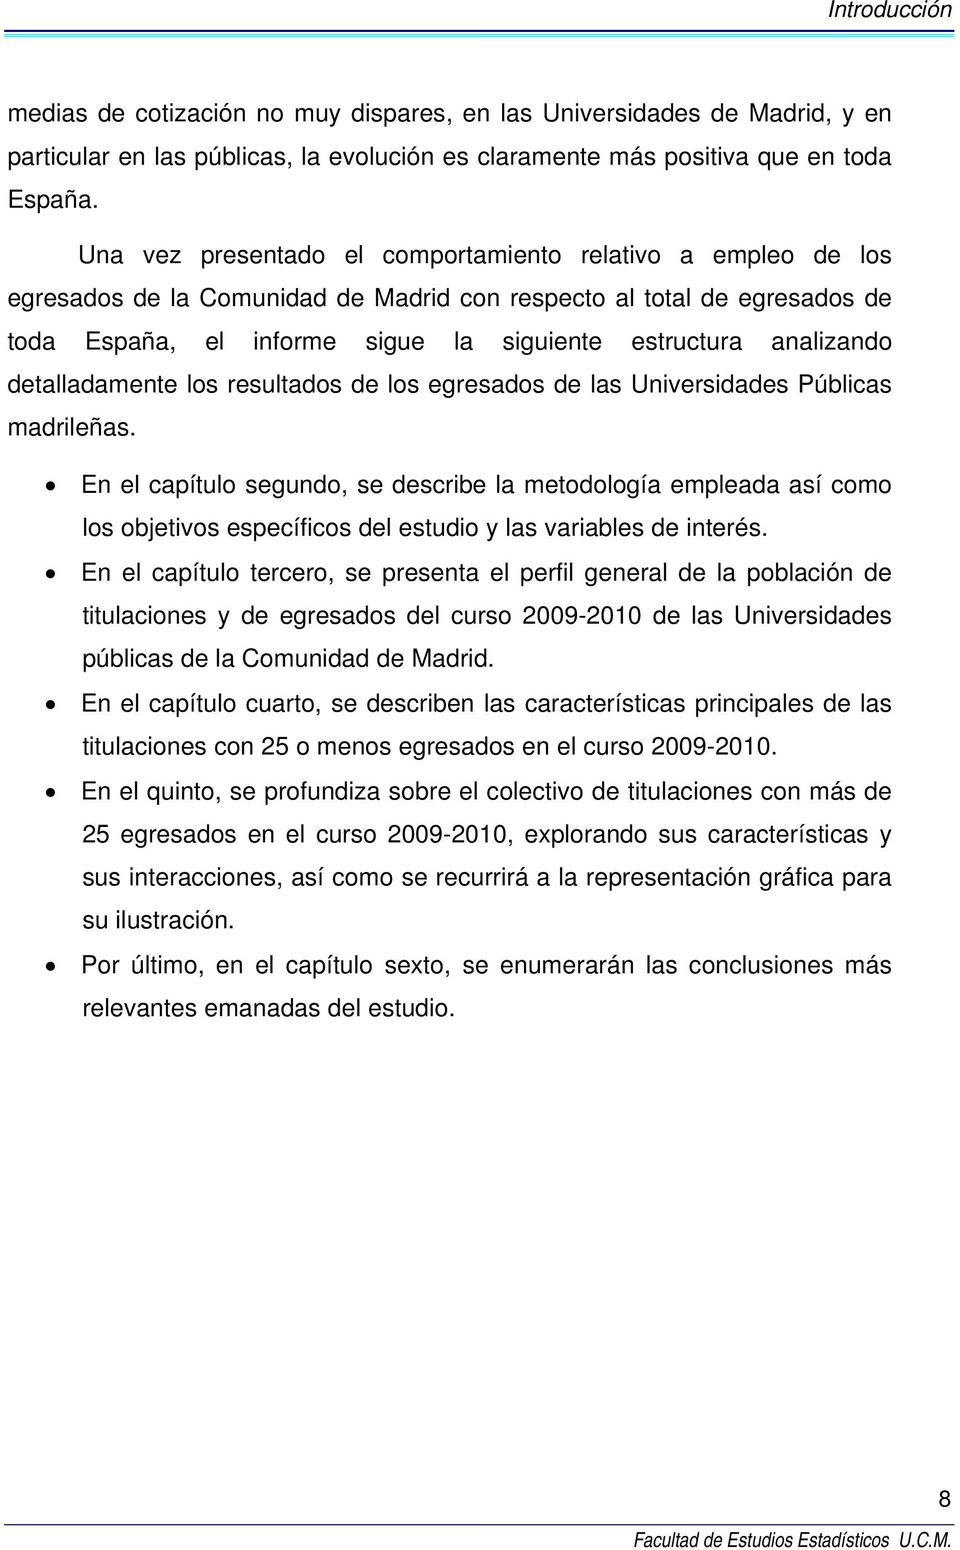 analizando detalladamente los resultados de los egresados de las Universidades Públicas madrileñas.